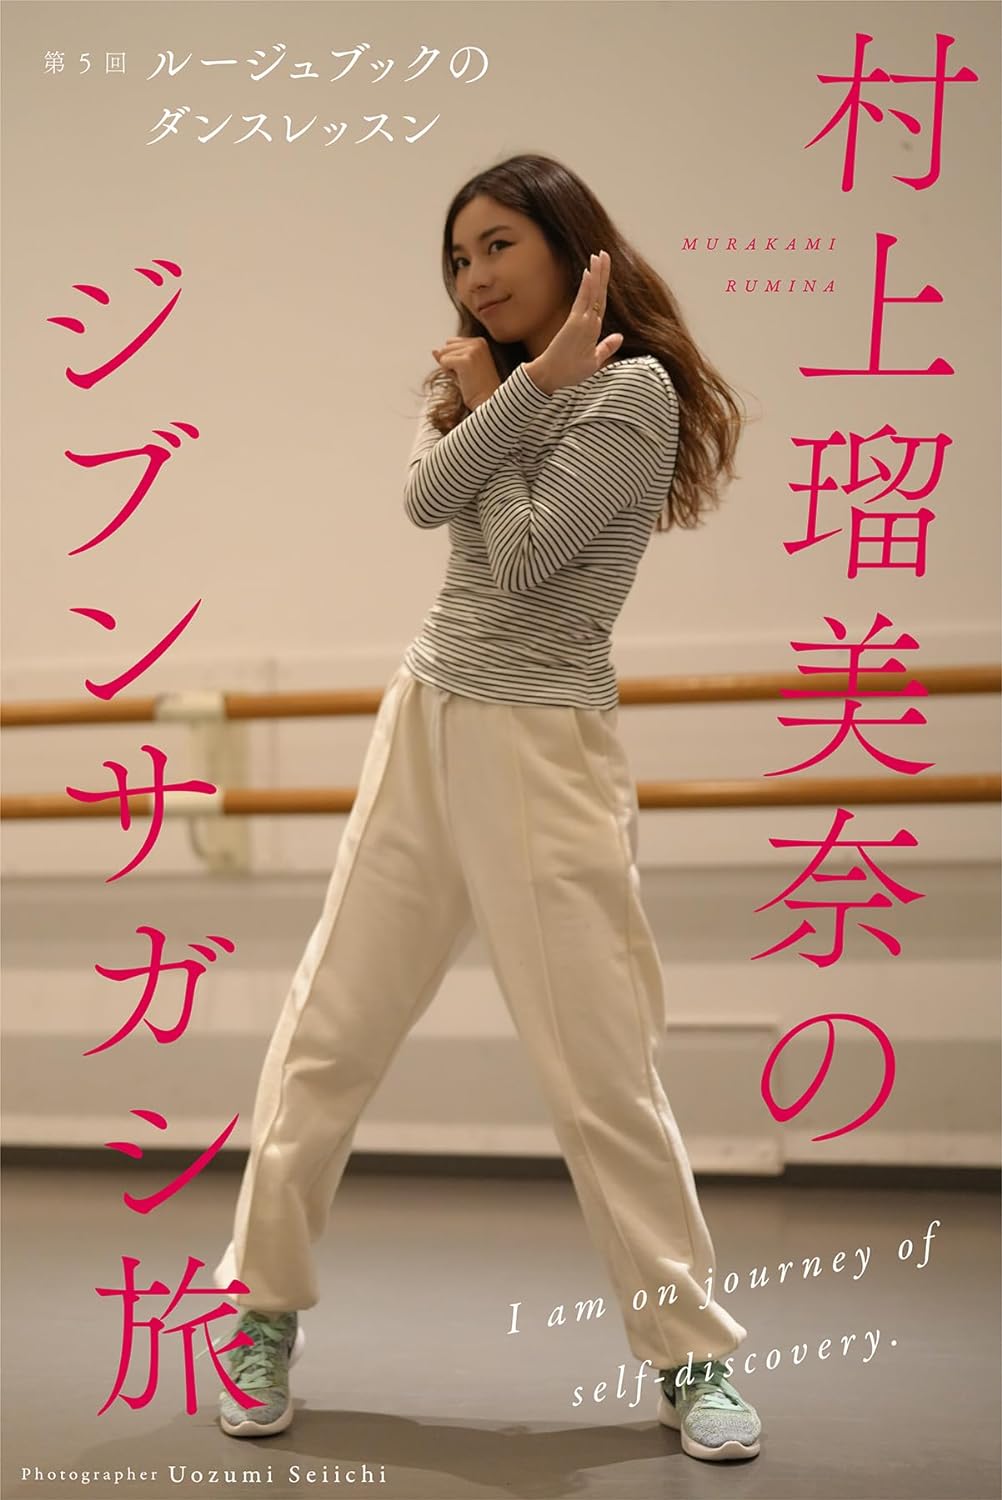 村上瑠美奈のジブンサガシ旅 第5回 ルージュブックのダンスレッスン (Mファクトリー) Kindle版のサンプル画像